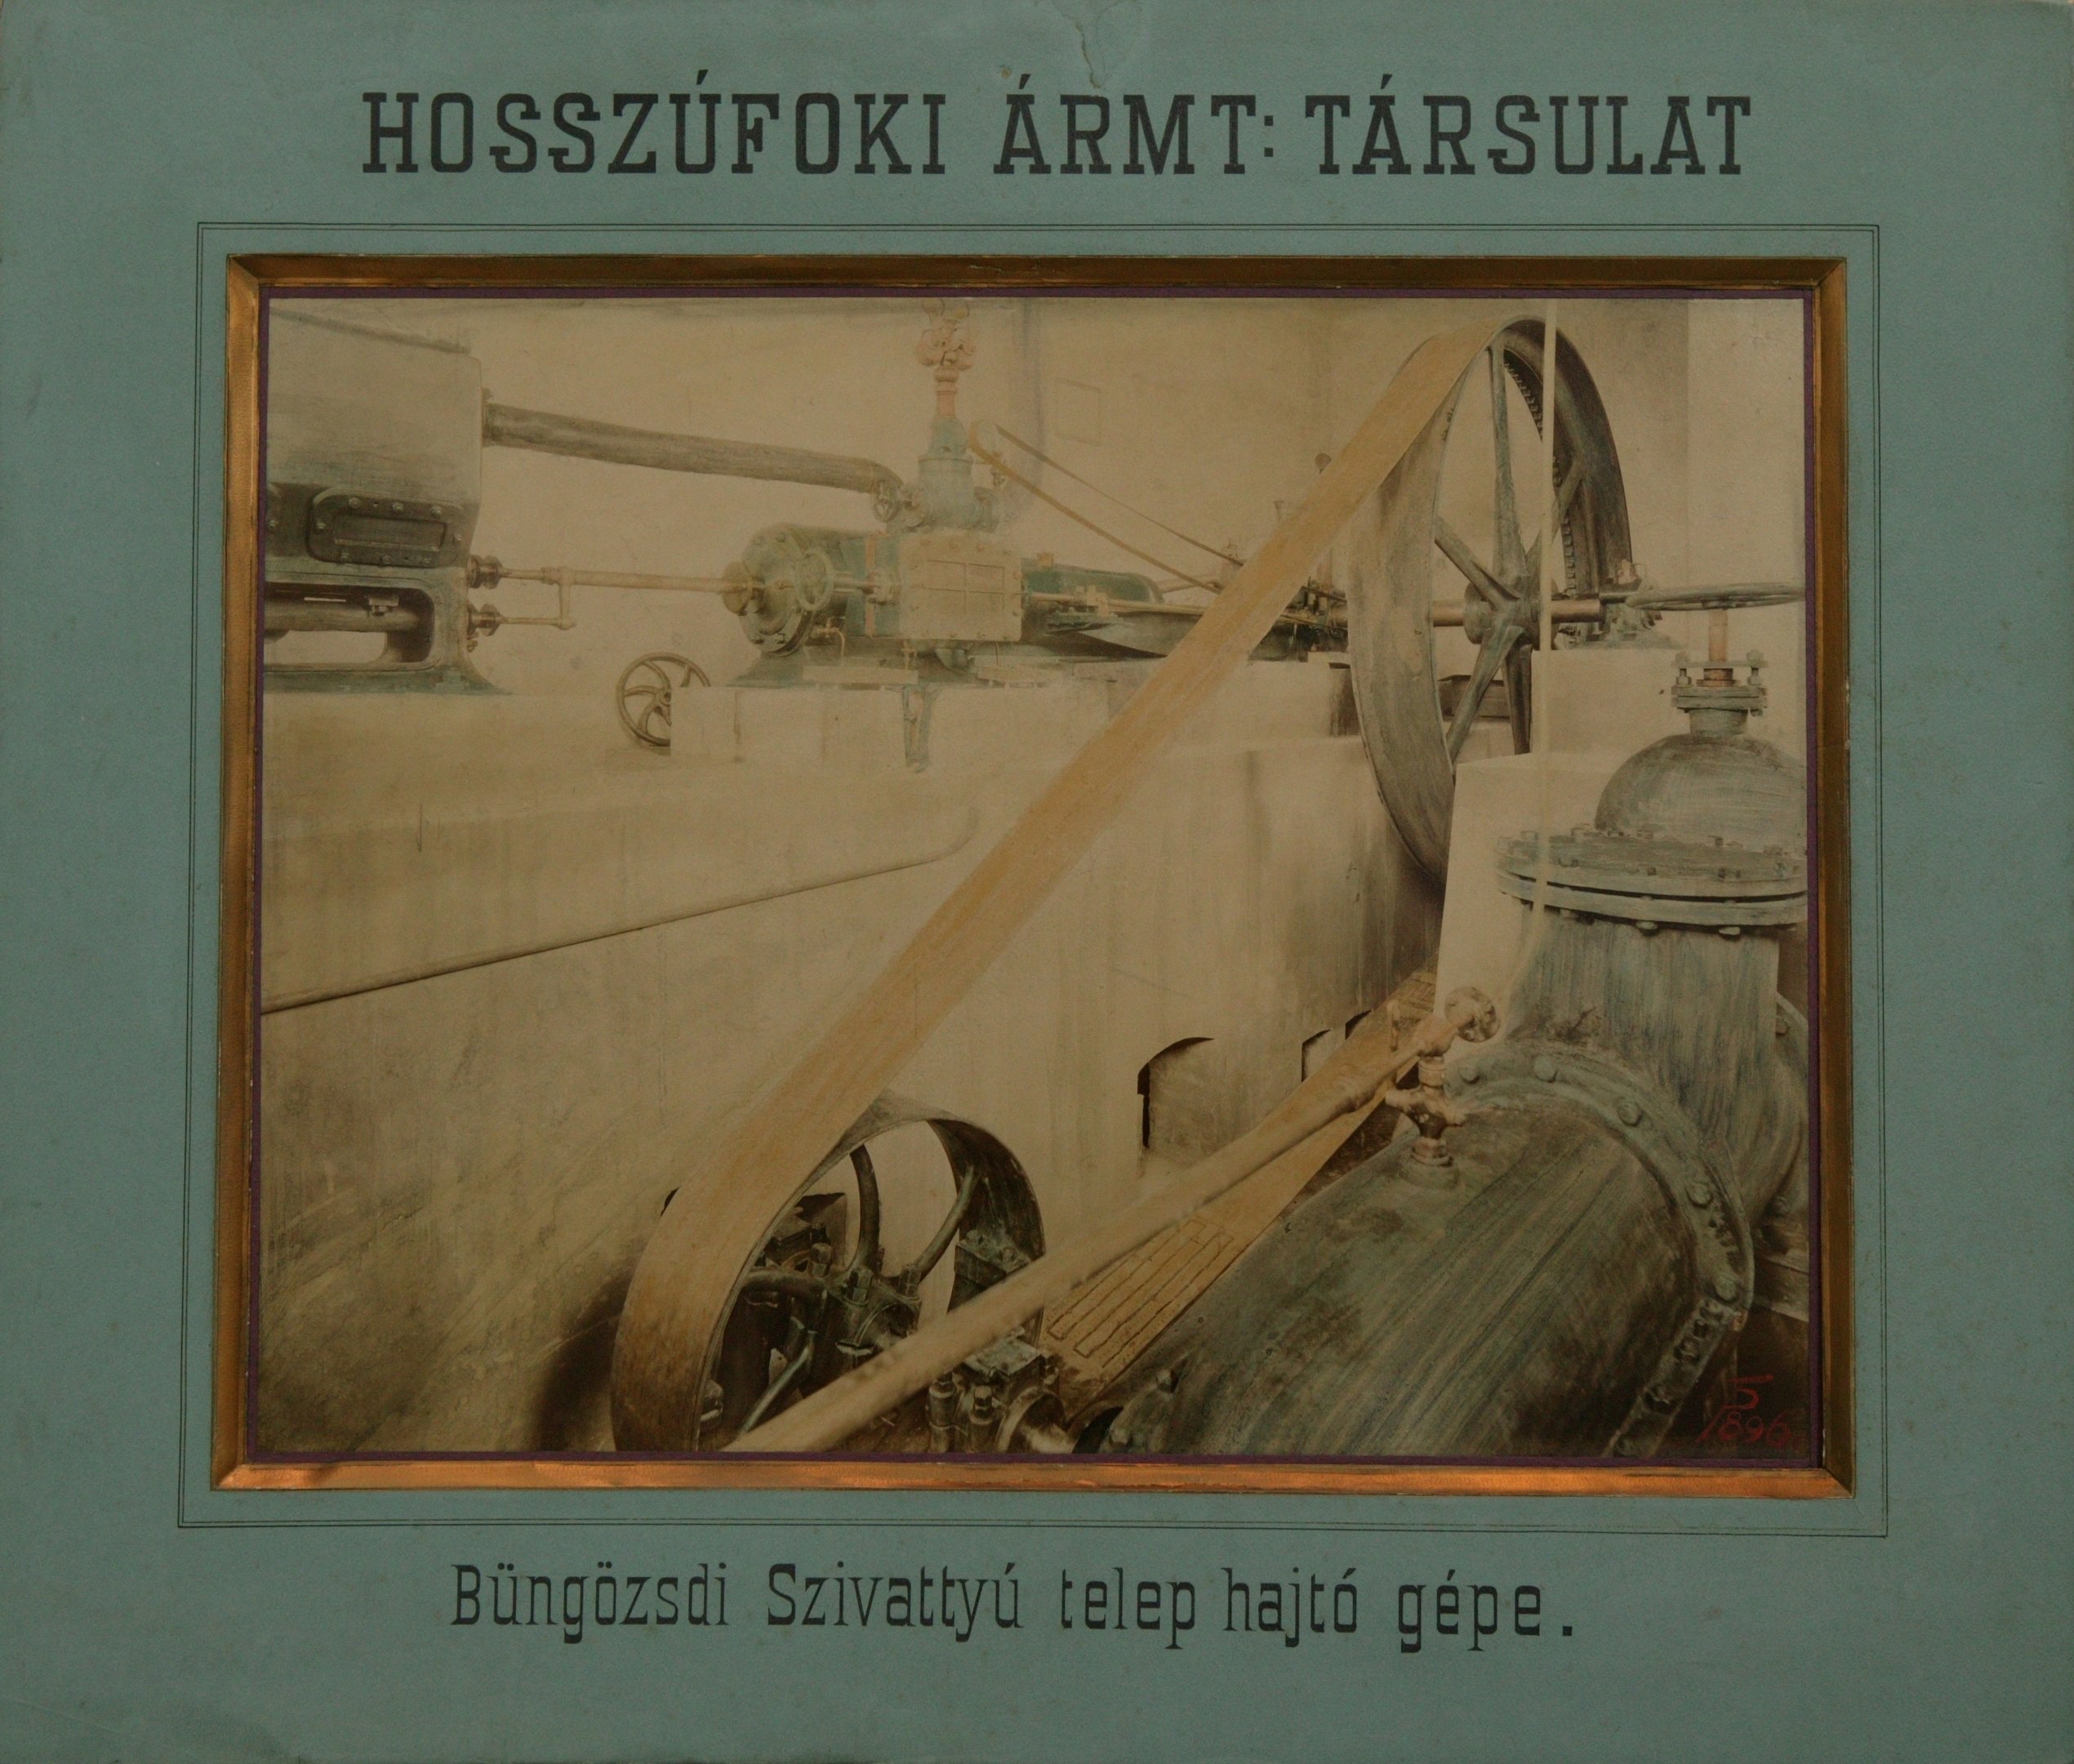 Büngözsdi szivattyútelep hajtógépe (Magyar Környezetvédelmi és Vízügyi Múzeum - Duna Múzeum CC BY-NC-SA)